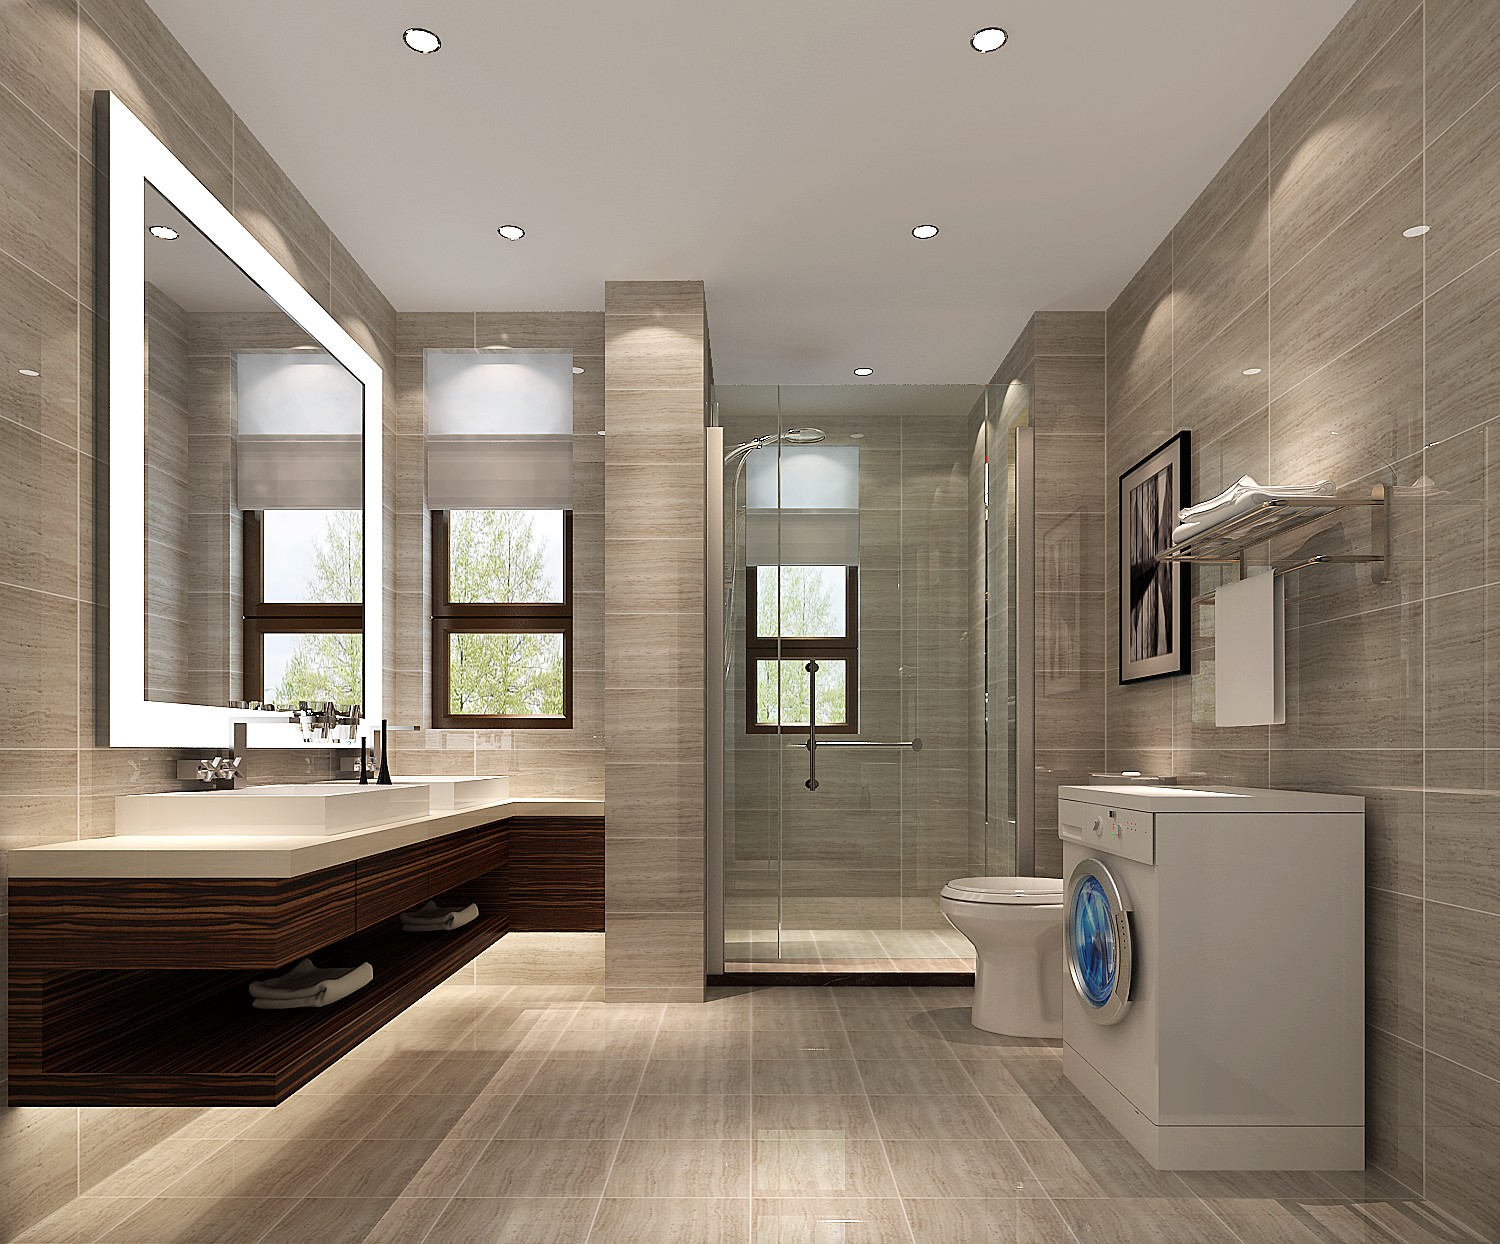 三居 现代简约 卫生间 卫生间图片来自专业别墅设计工作室在中信新城的分享